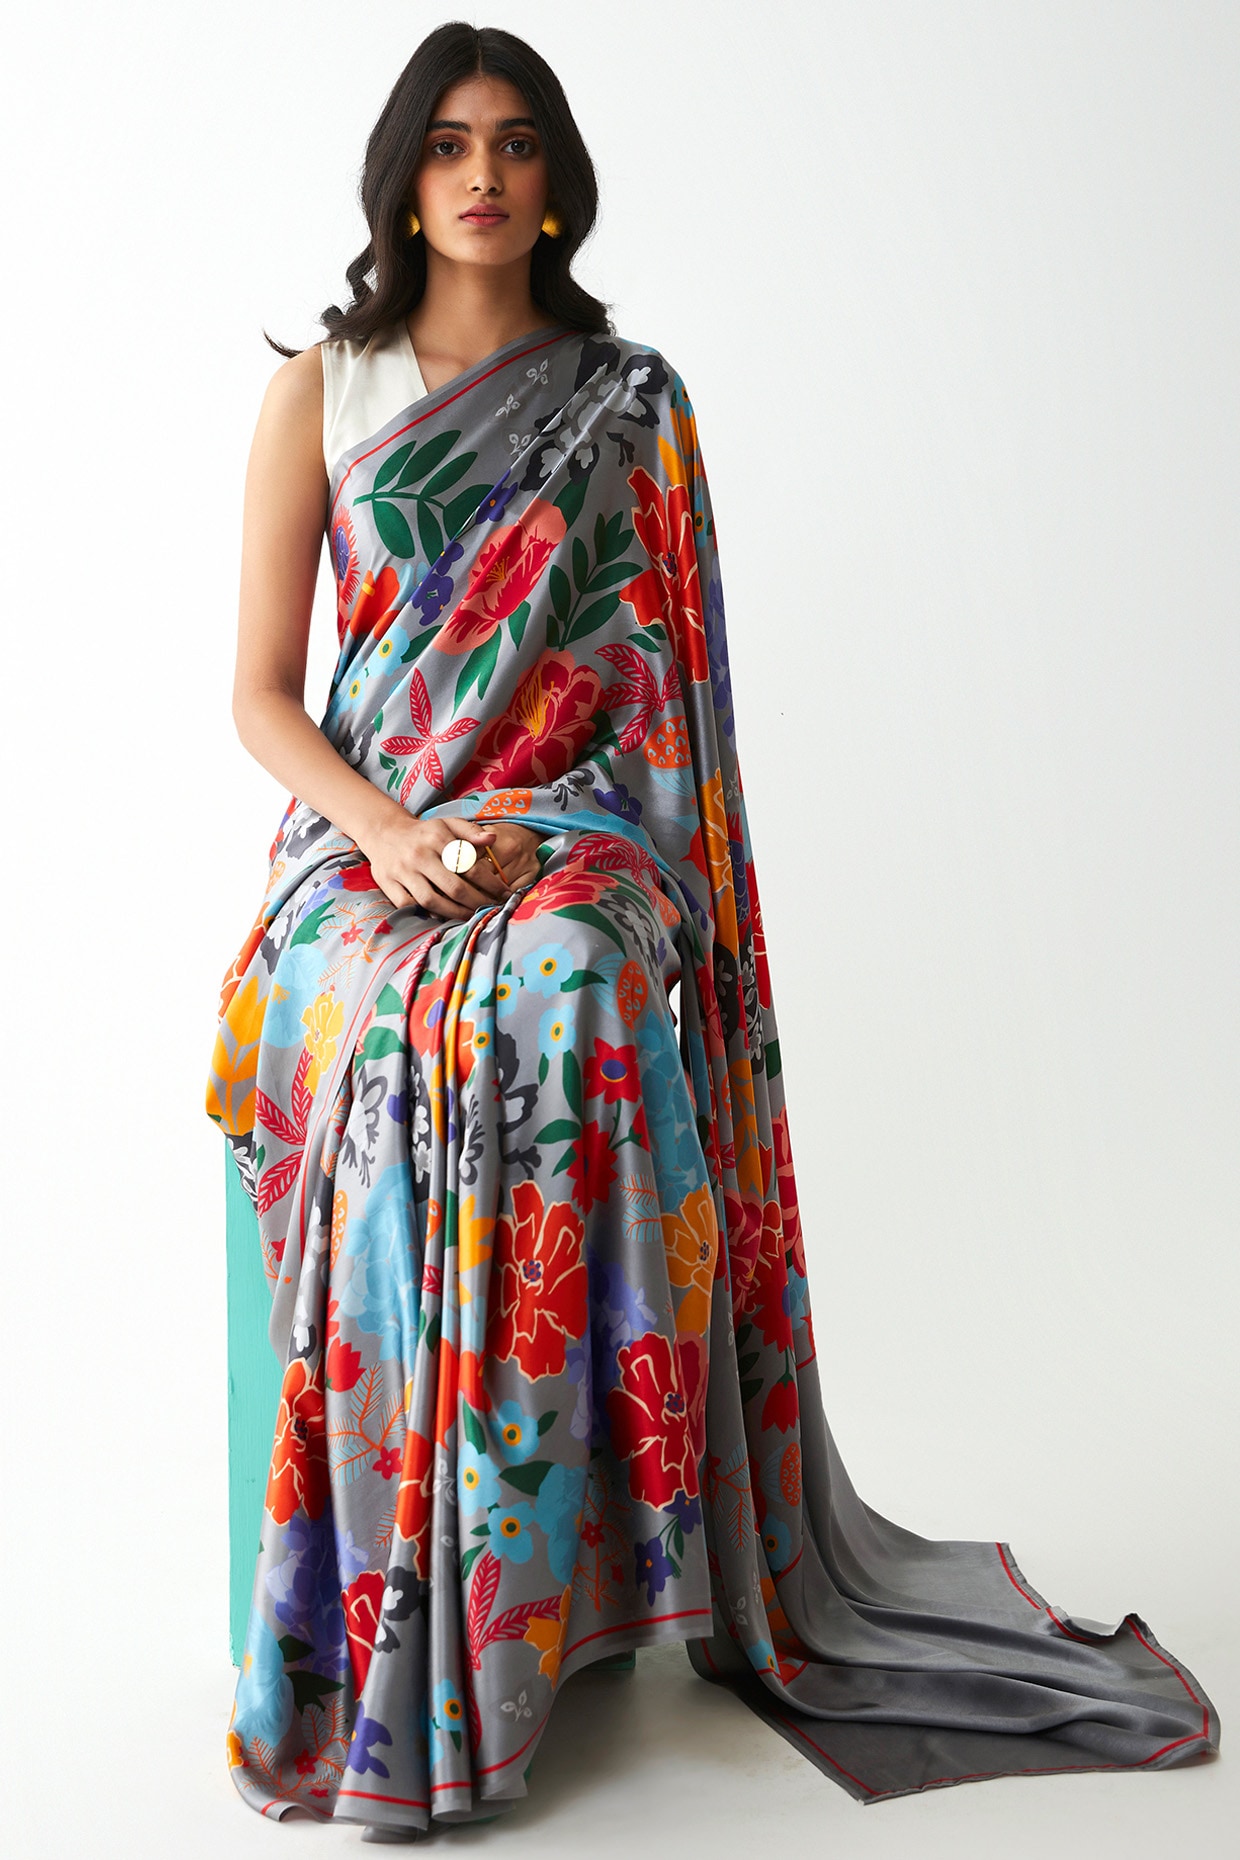 Gadwal digital printed sarees